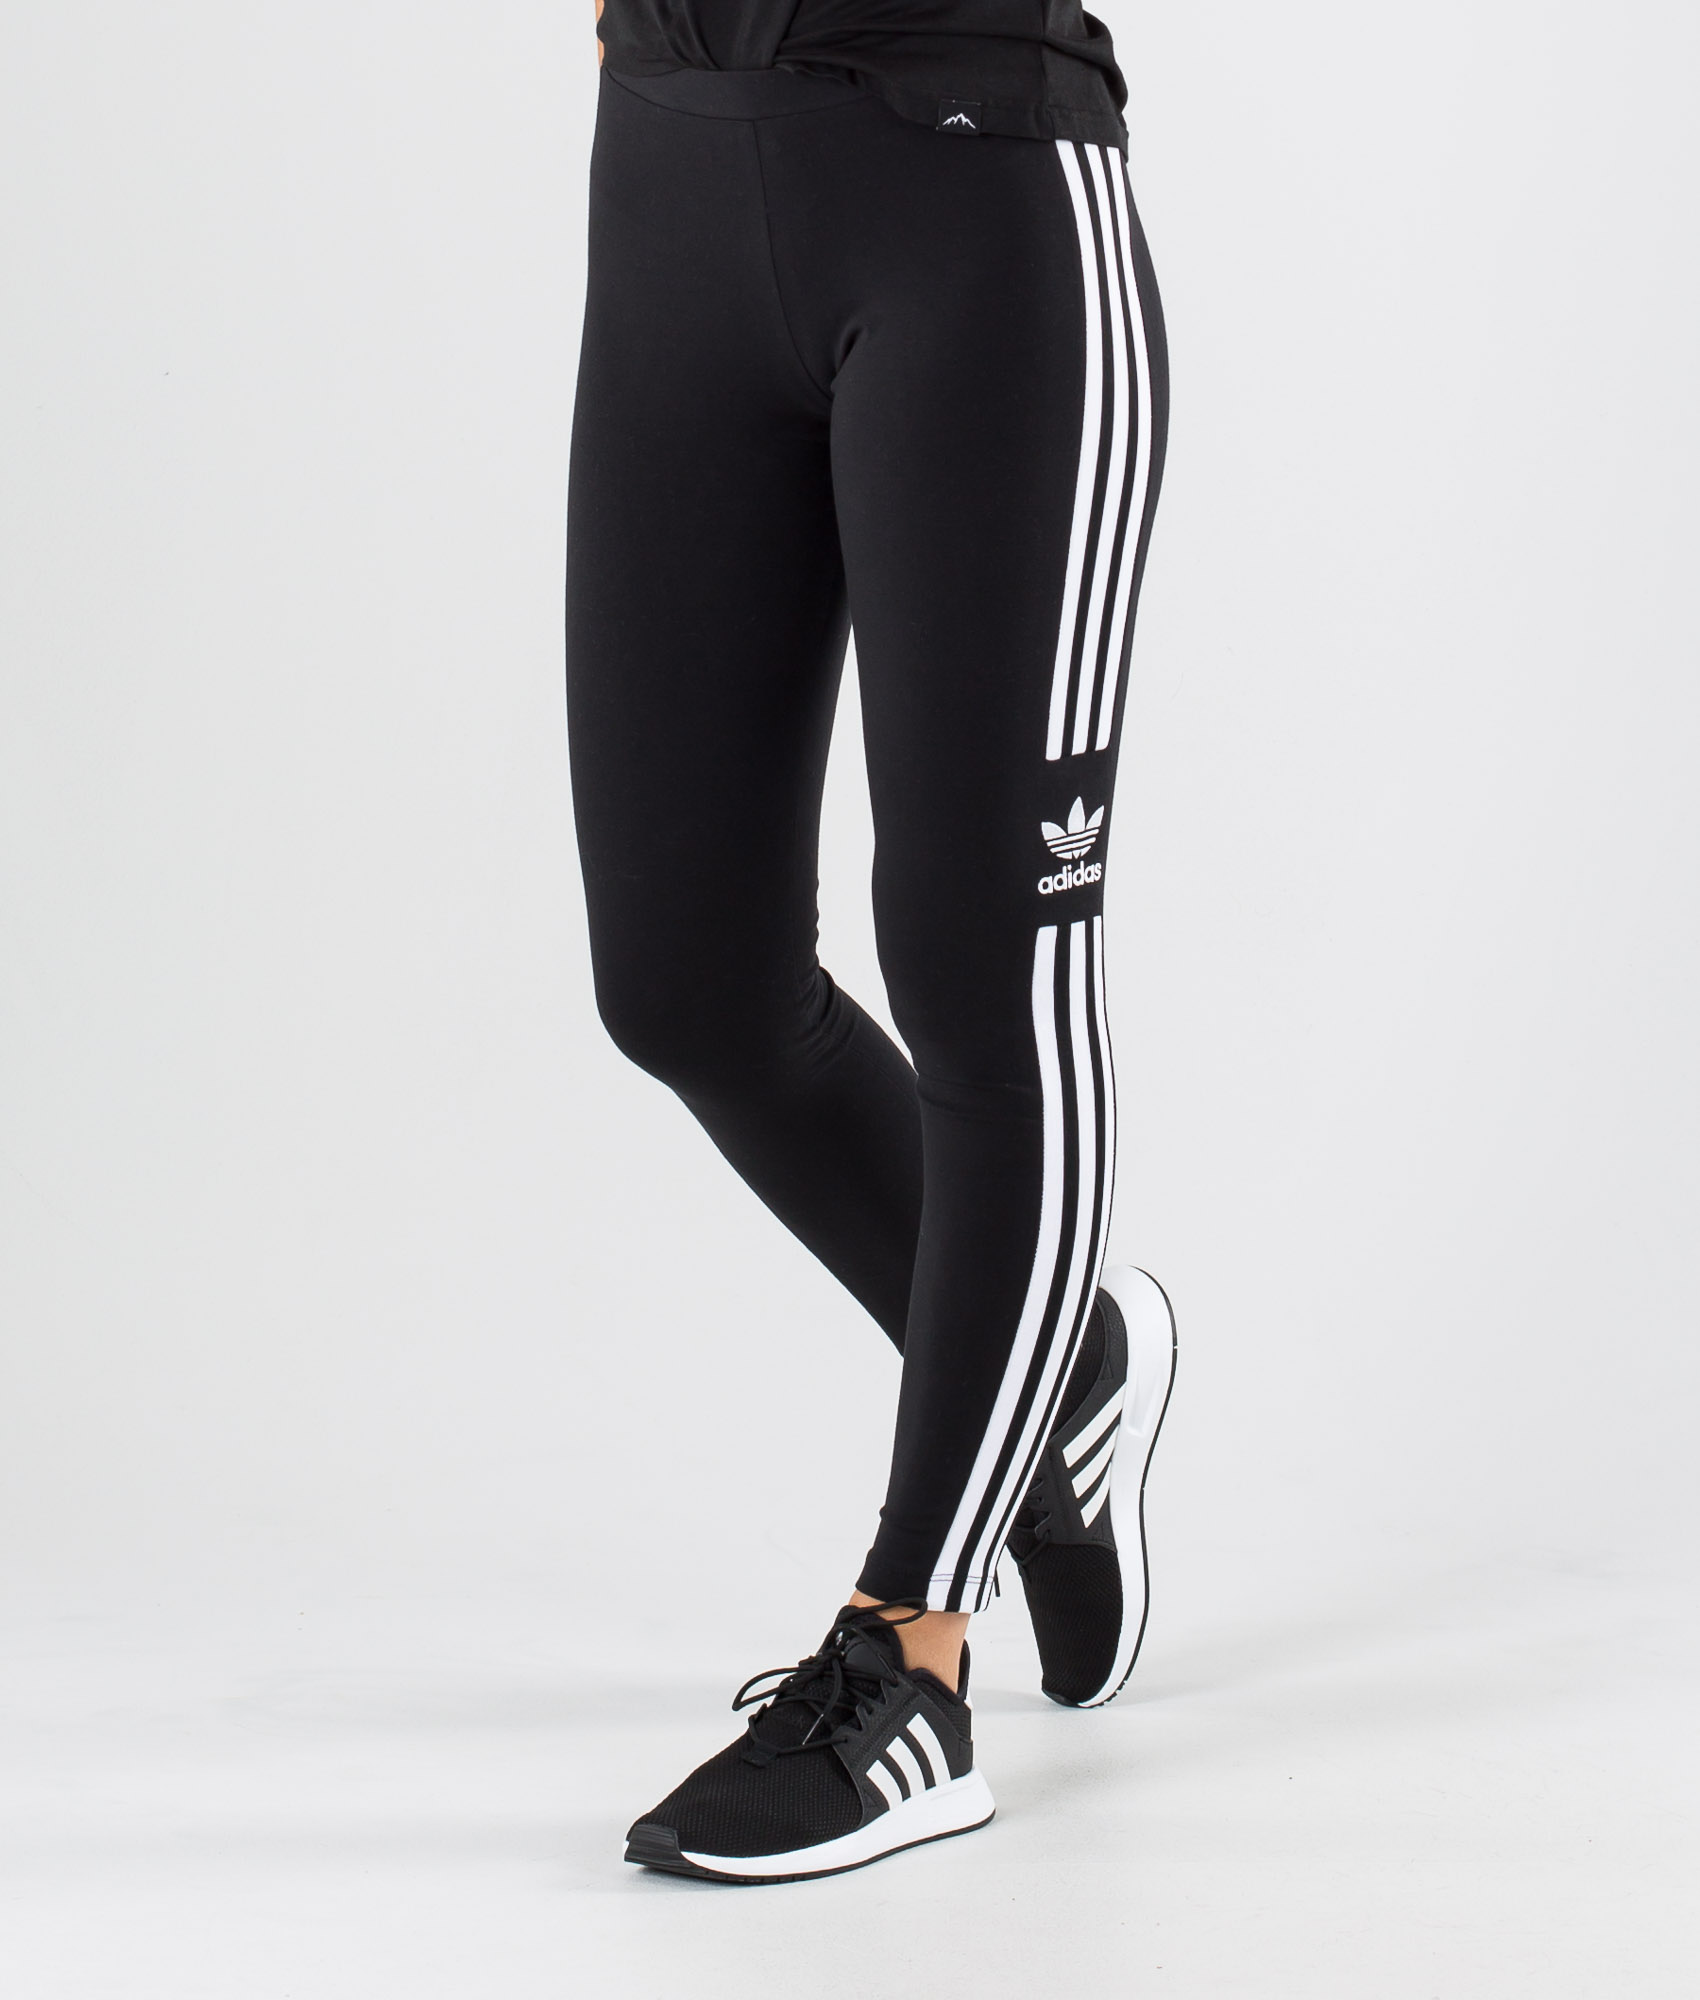 Adidas Originals Trefoil Tight Leggings Black - Ridestore.it